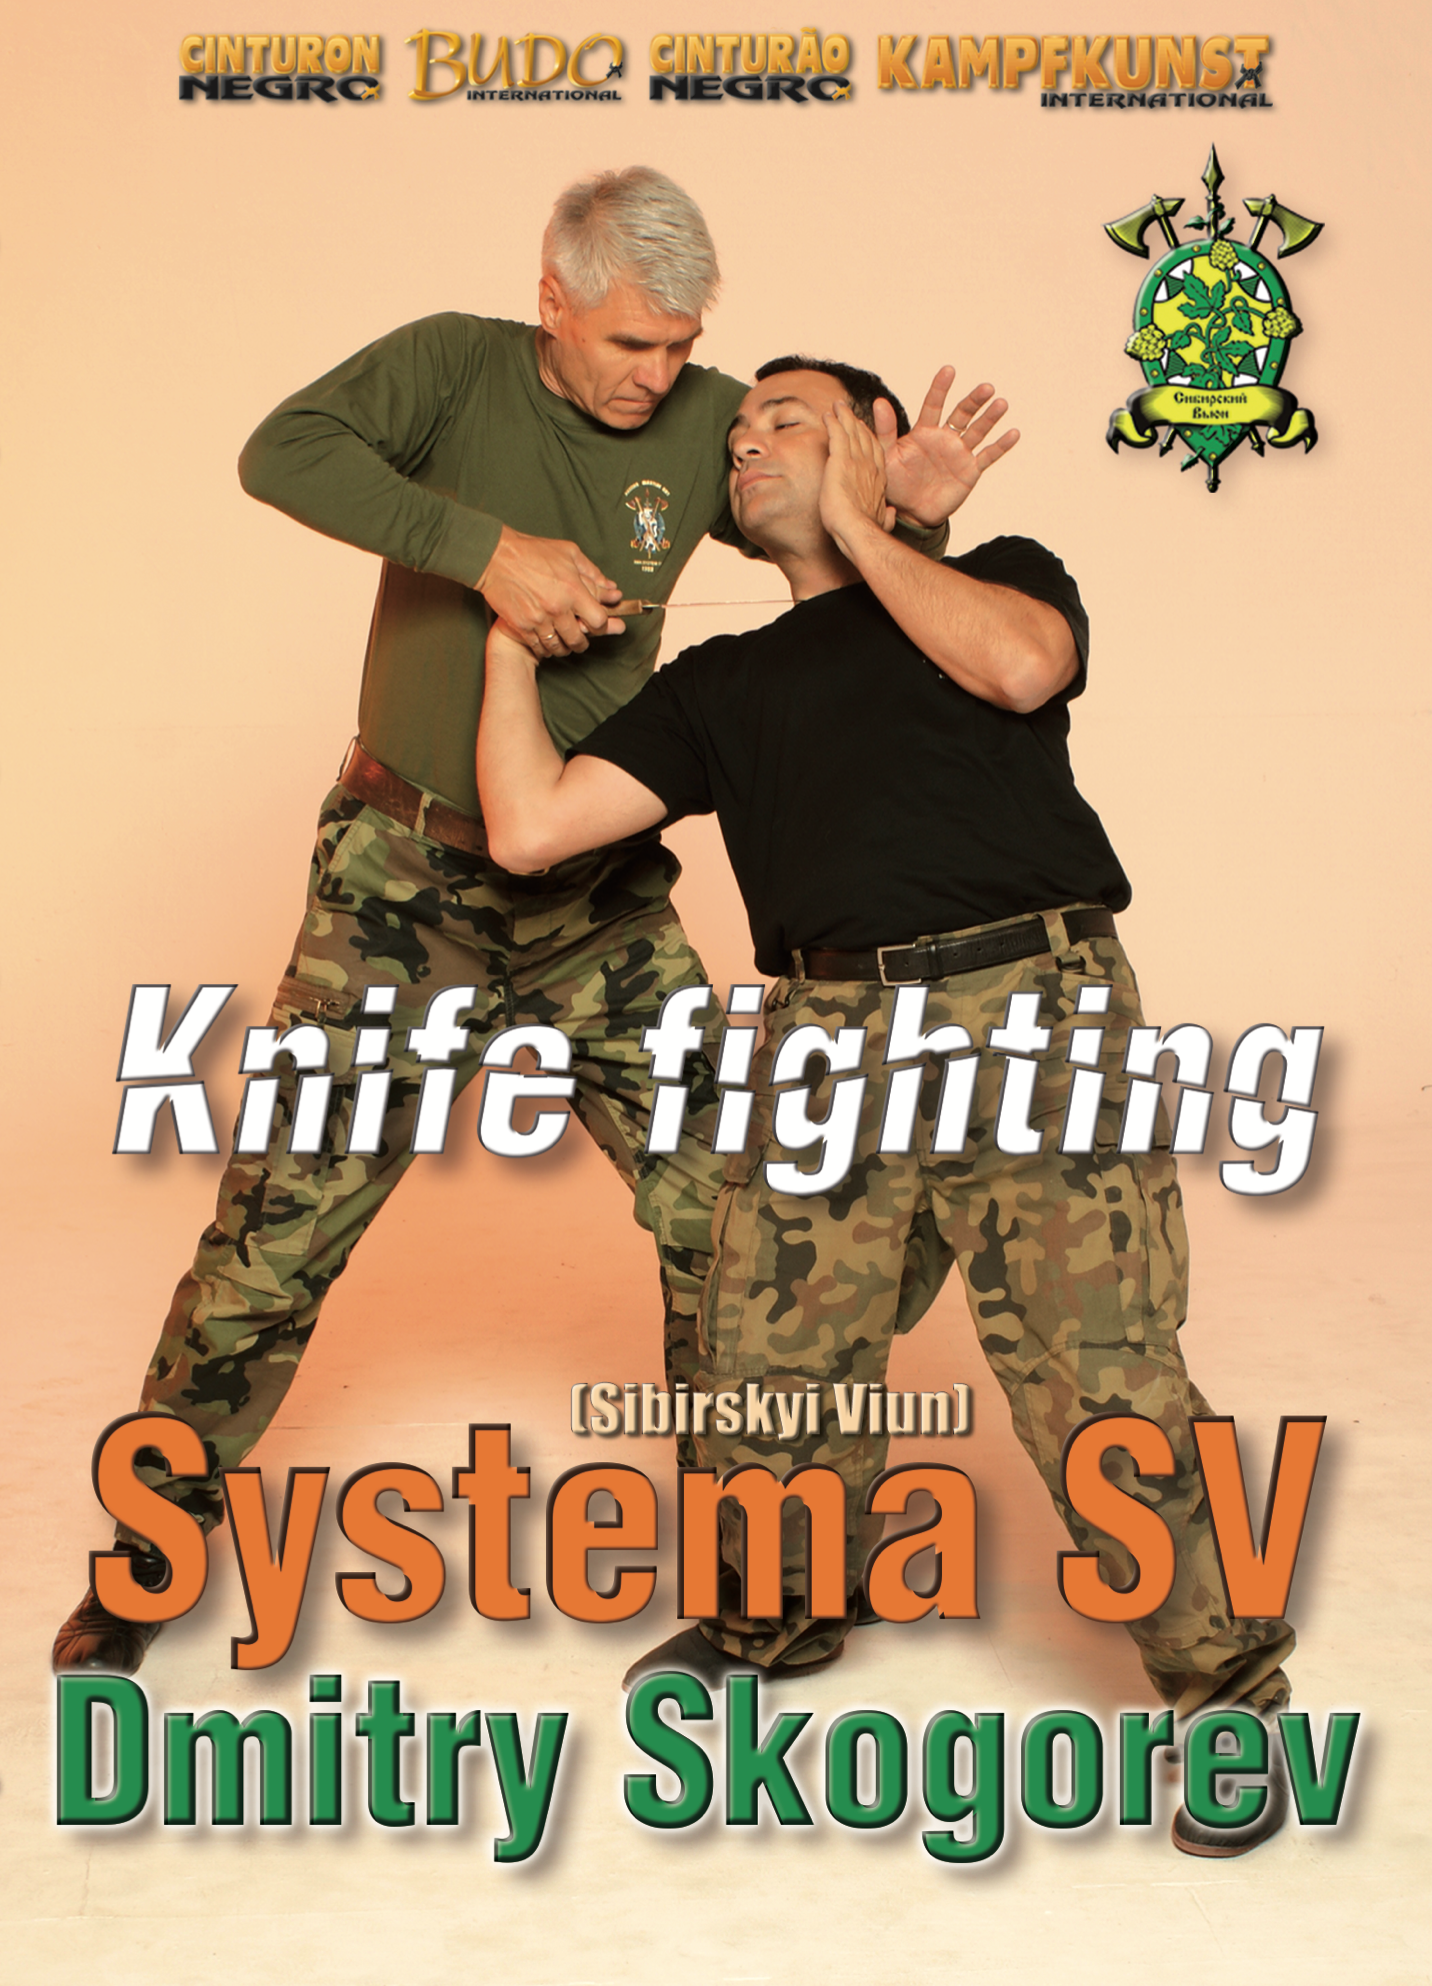 RMA Systema SV DVD de lucha con cuchillos con Dmitry Skogorev 